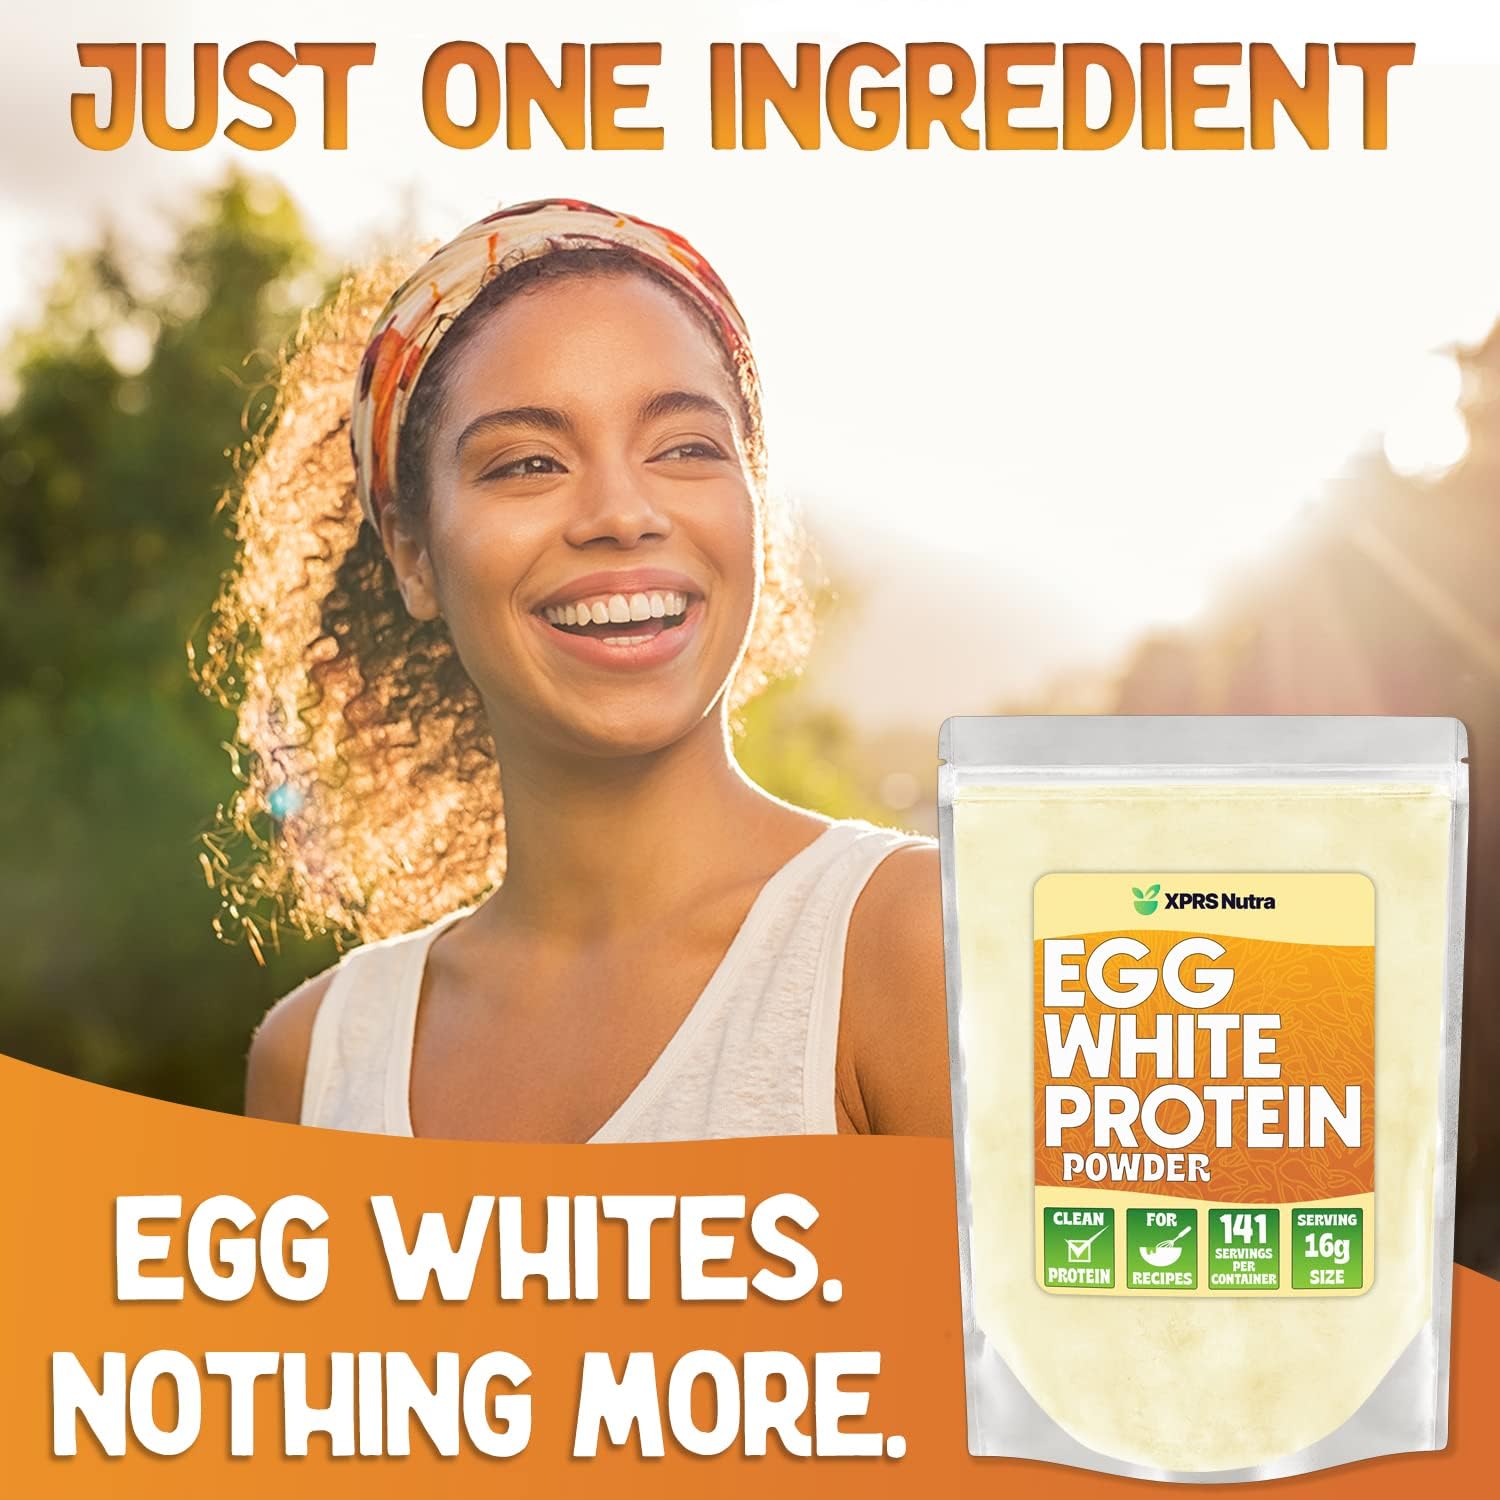 Egg White Protein Powder